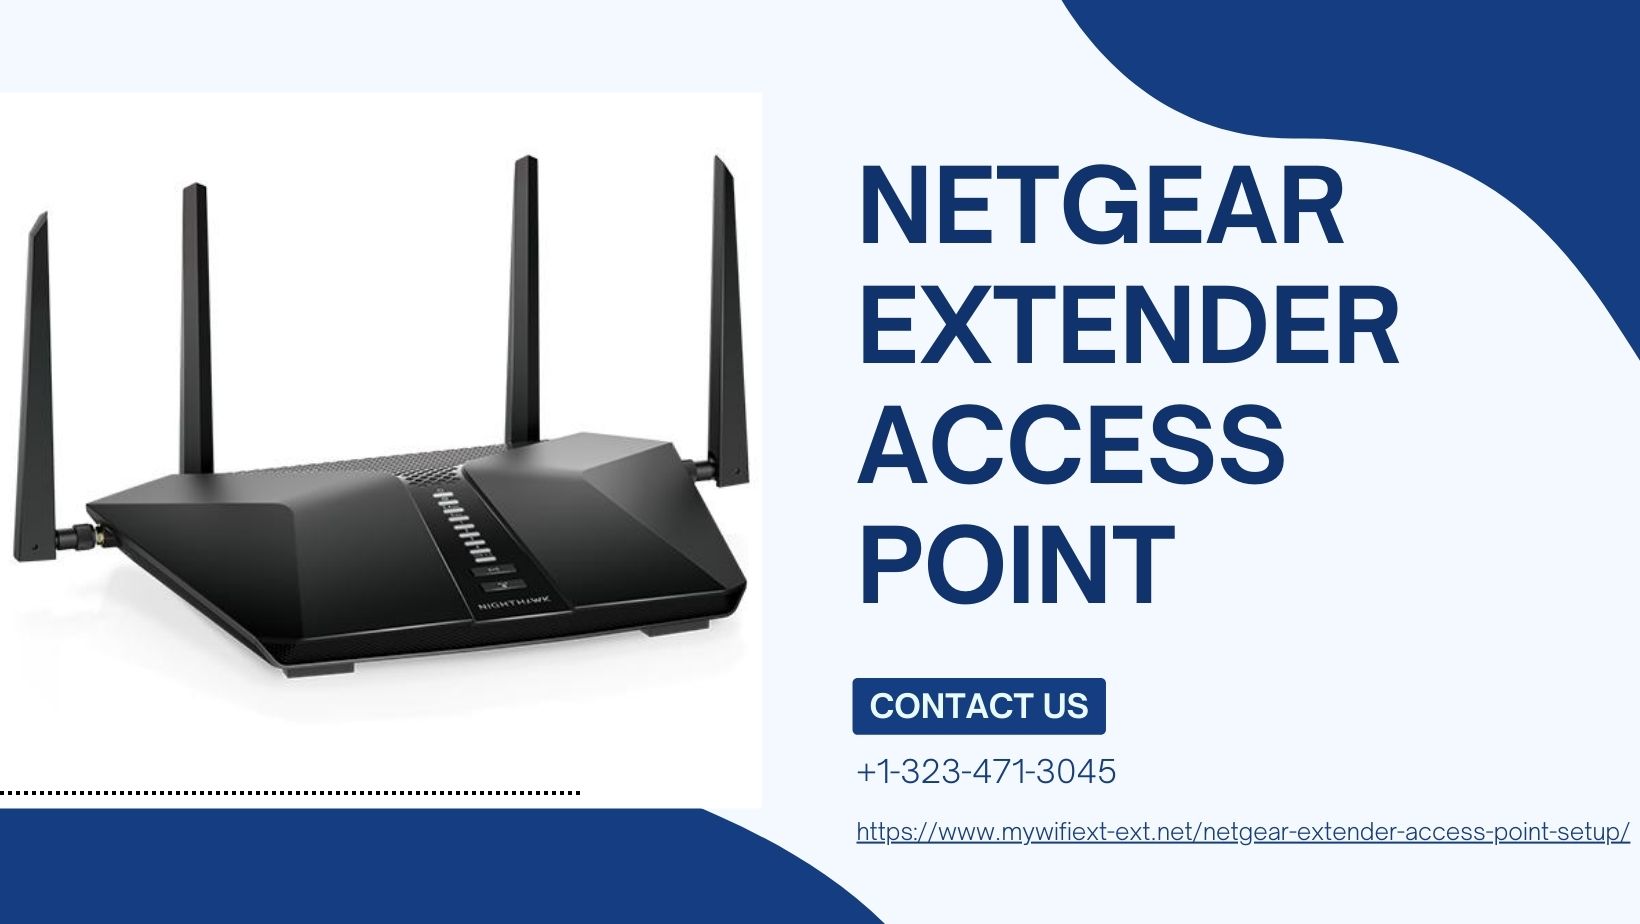 Netgear extender access point